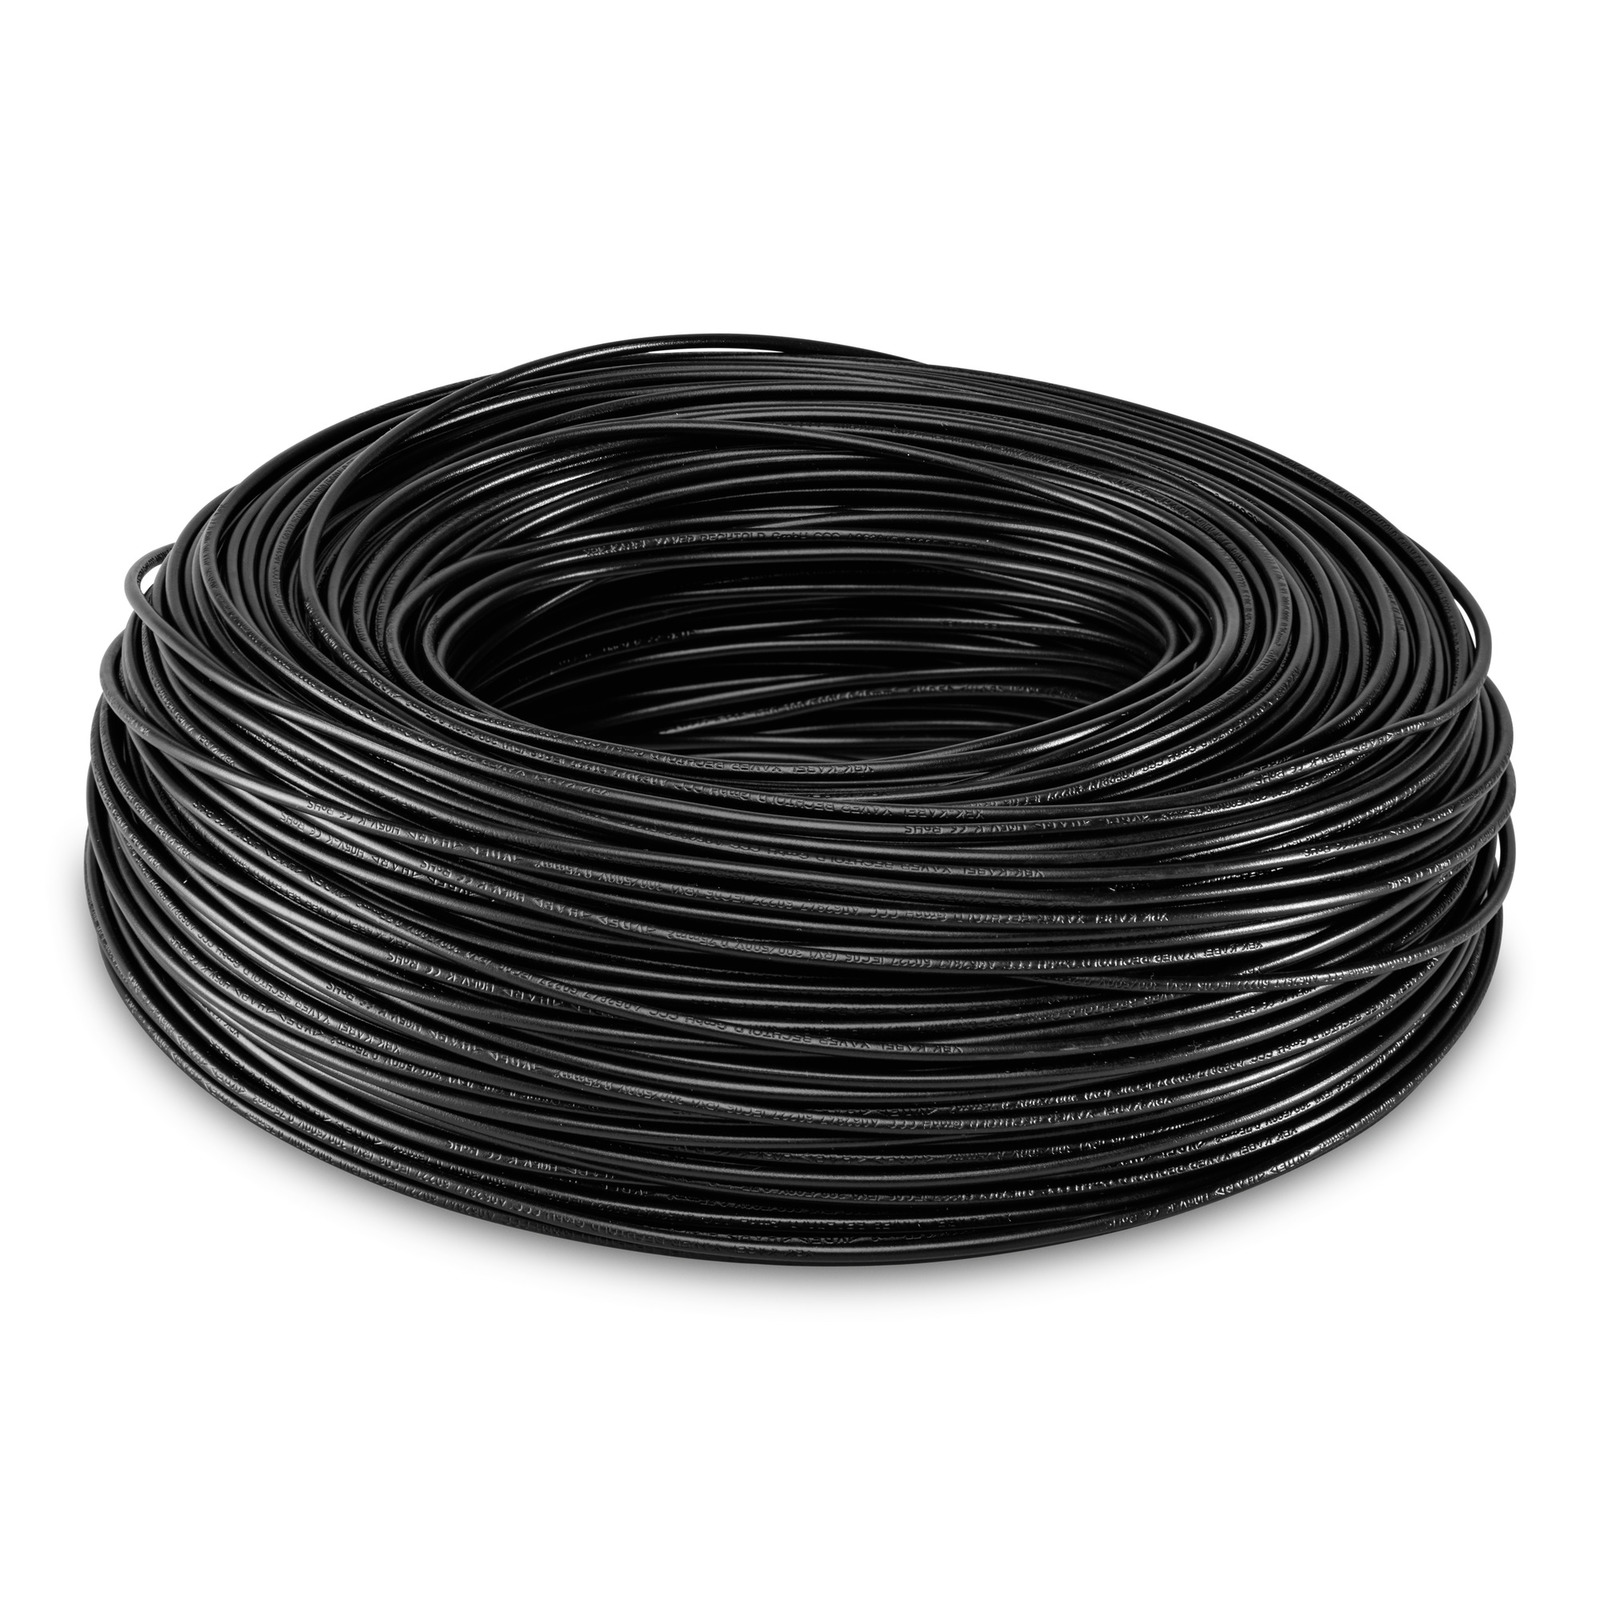 Vymezovací kabel (150 M)